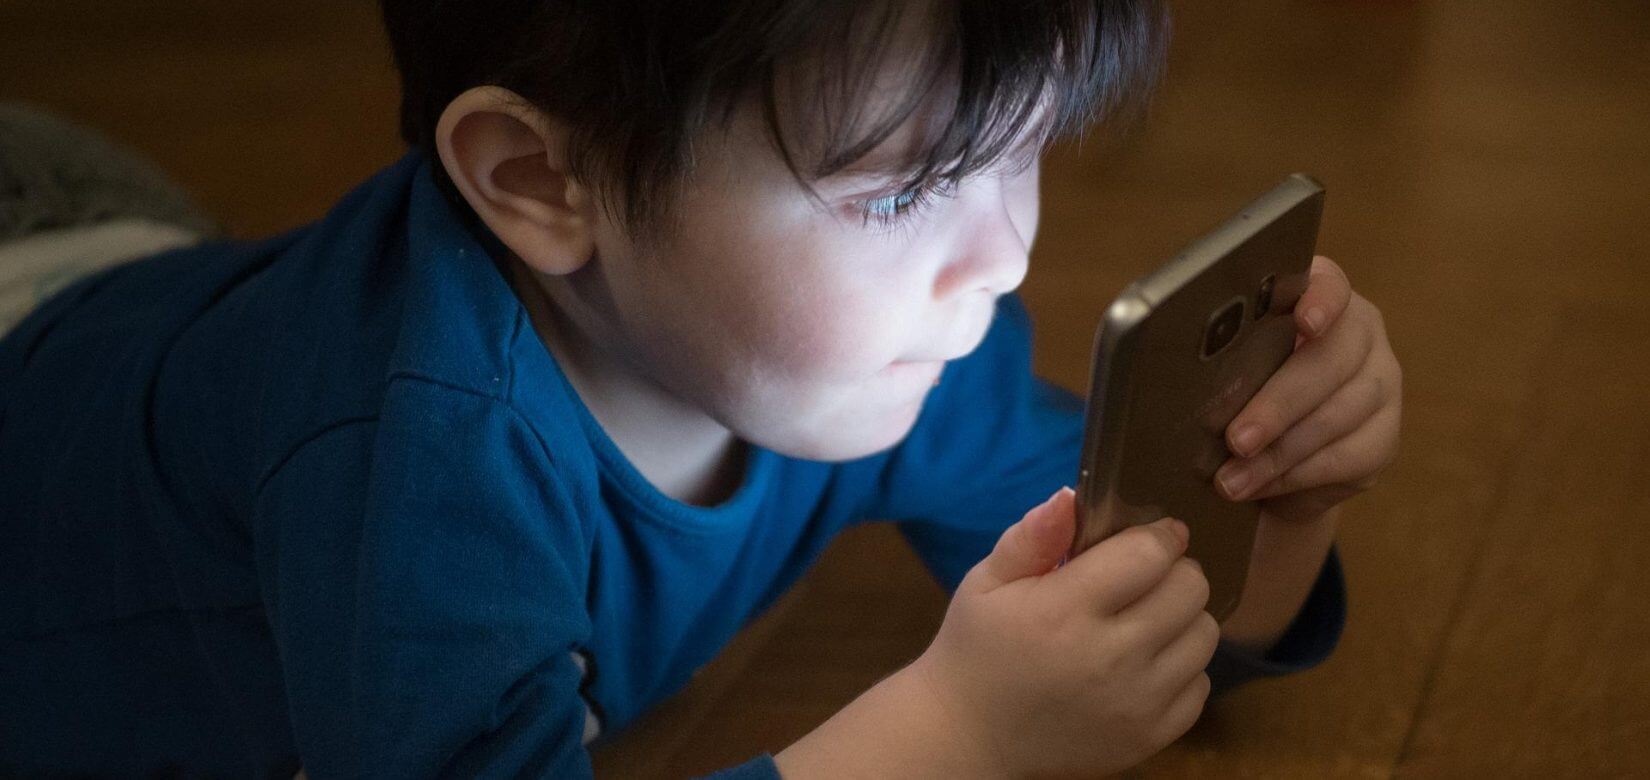 Κινητά και tablets καταστρέφουν τον ύπνο των παιδιών